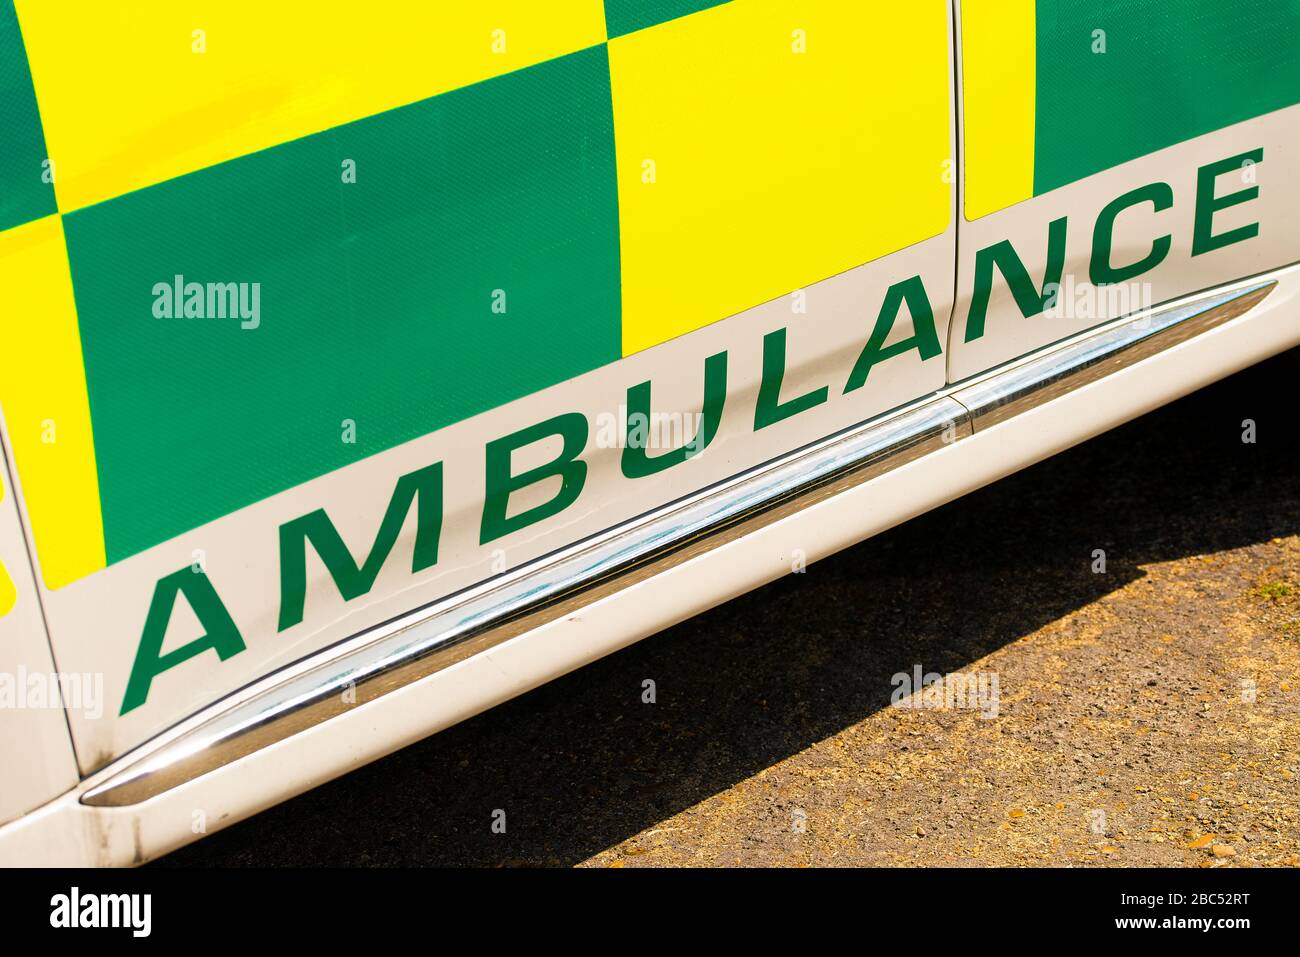 Vista en ángulo alto de la señal DE AMBULANCIA en vehículo médico de respuesta de emergencia NHS verde y amarillo de alta visibilidad. Foto de stock